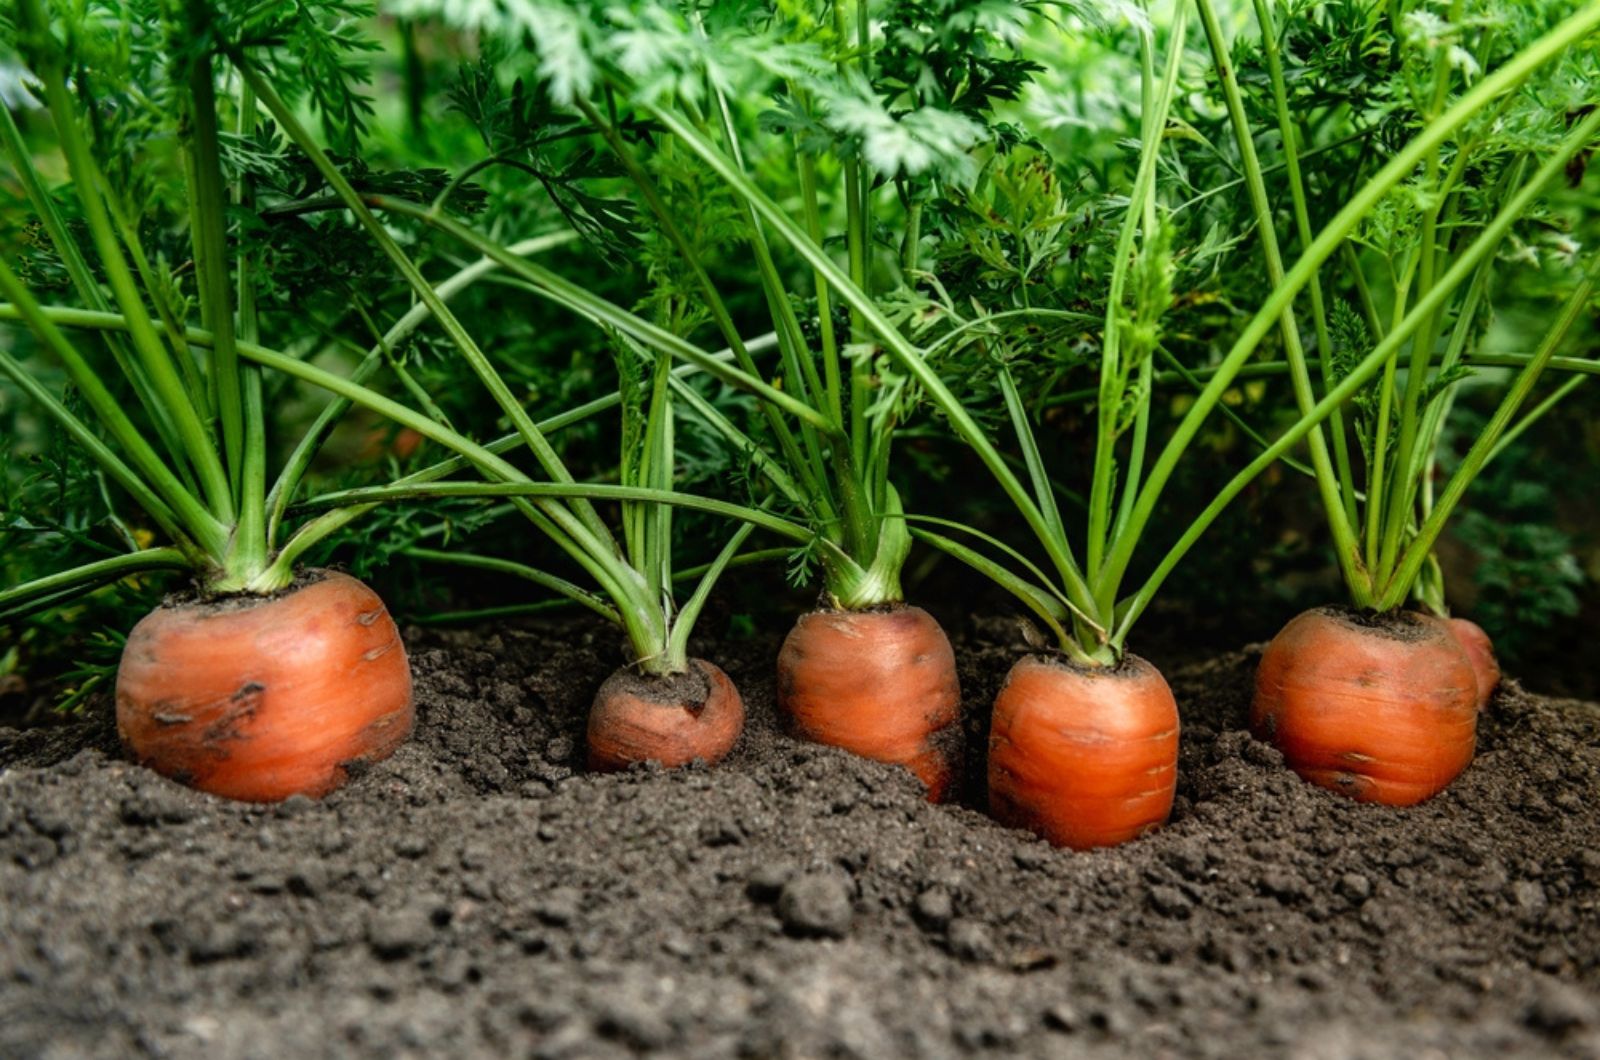 Ripe carrots growing in soil in garden